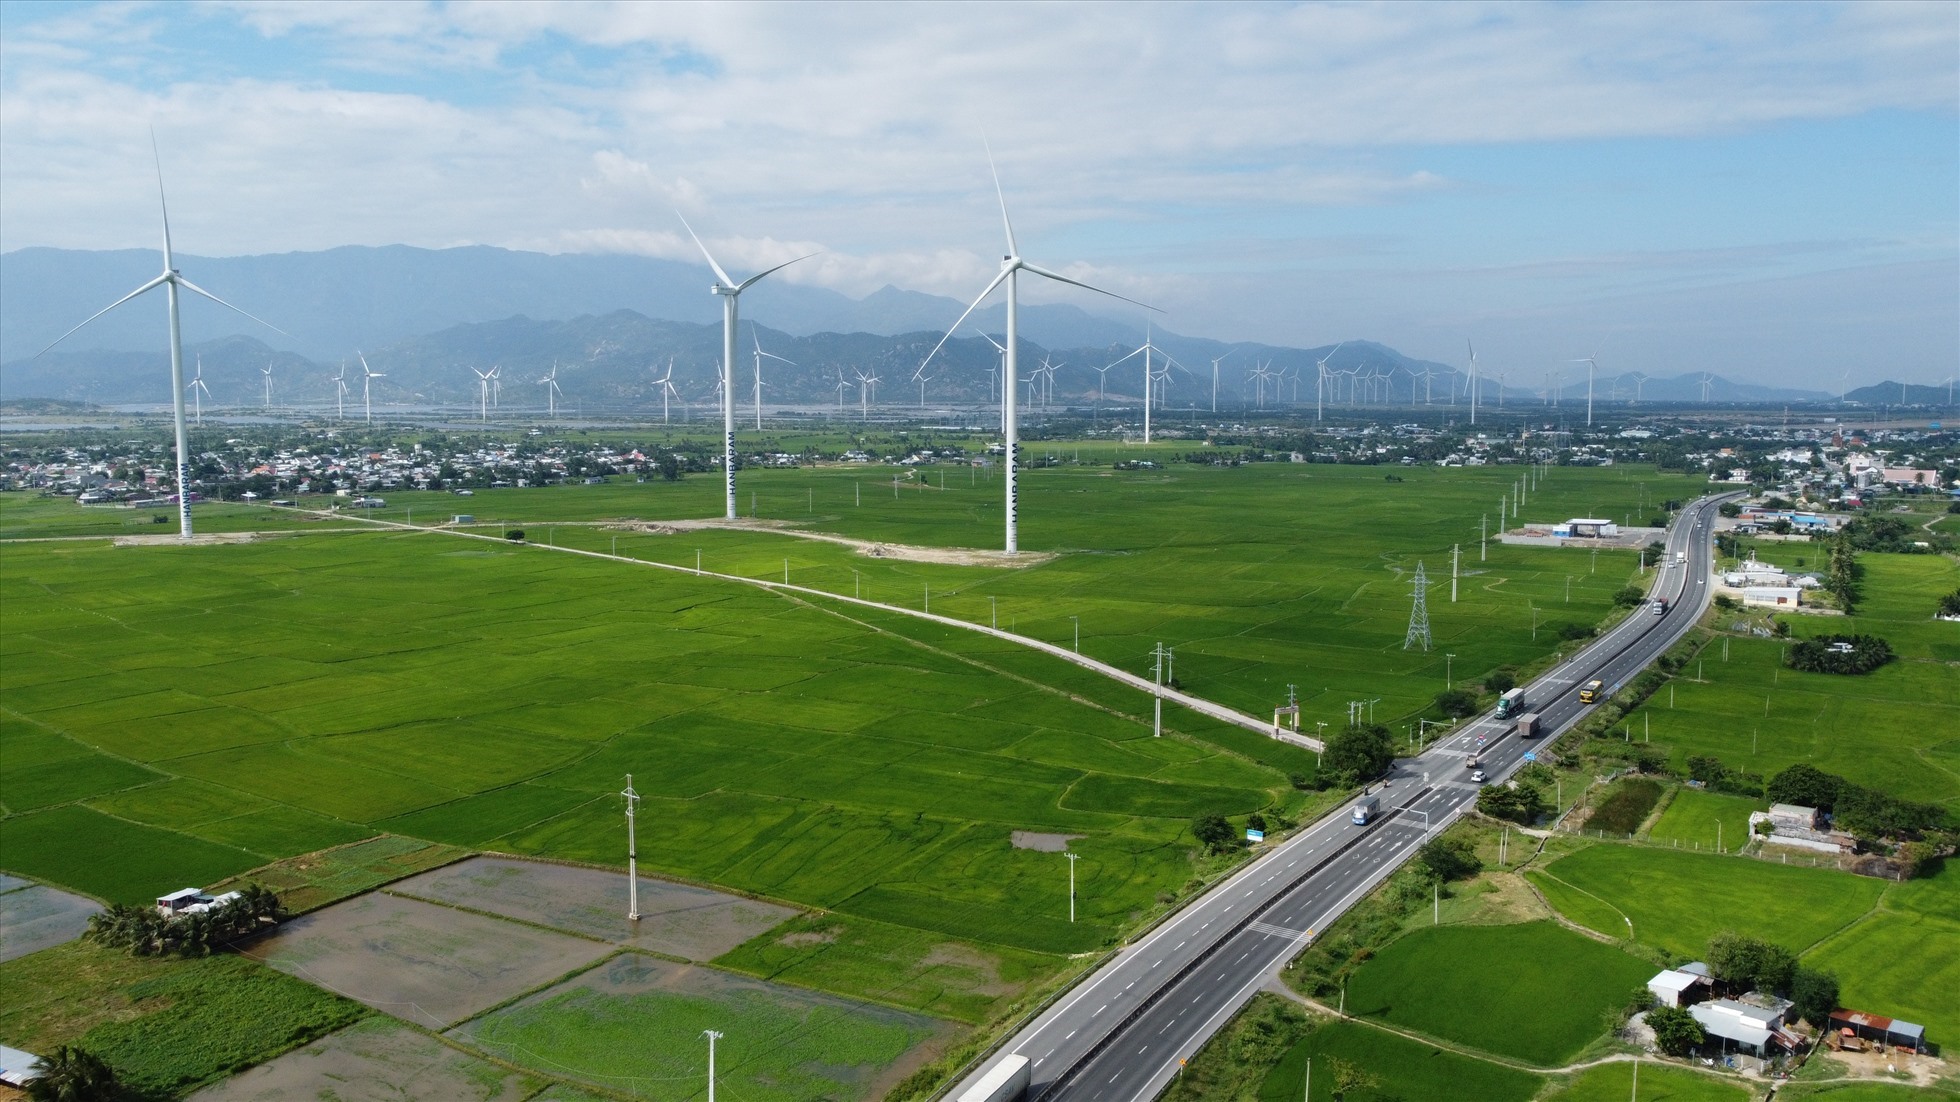 Nguồn thu từ các dự án điện gió, điện mặt trời chiếm tỉ trọng lớn trong tổng thu ngân sách trên địa bàn Ninh Thuận. Ảnh Thu Cúc